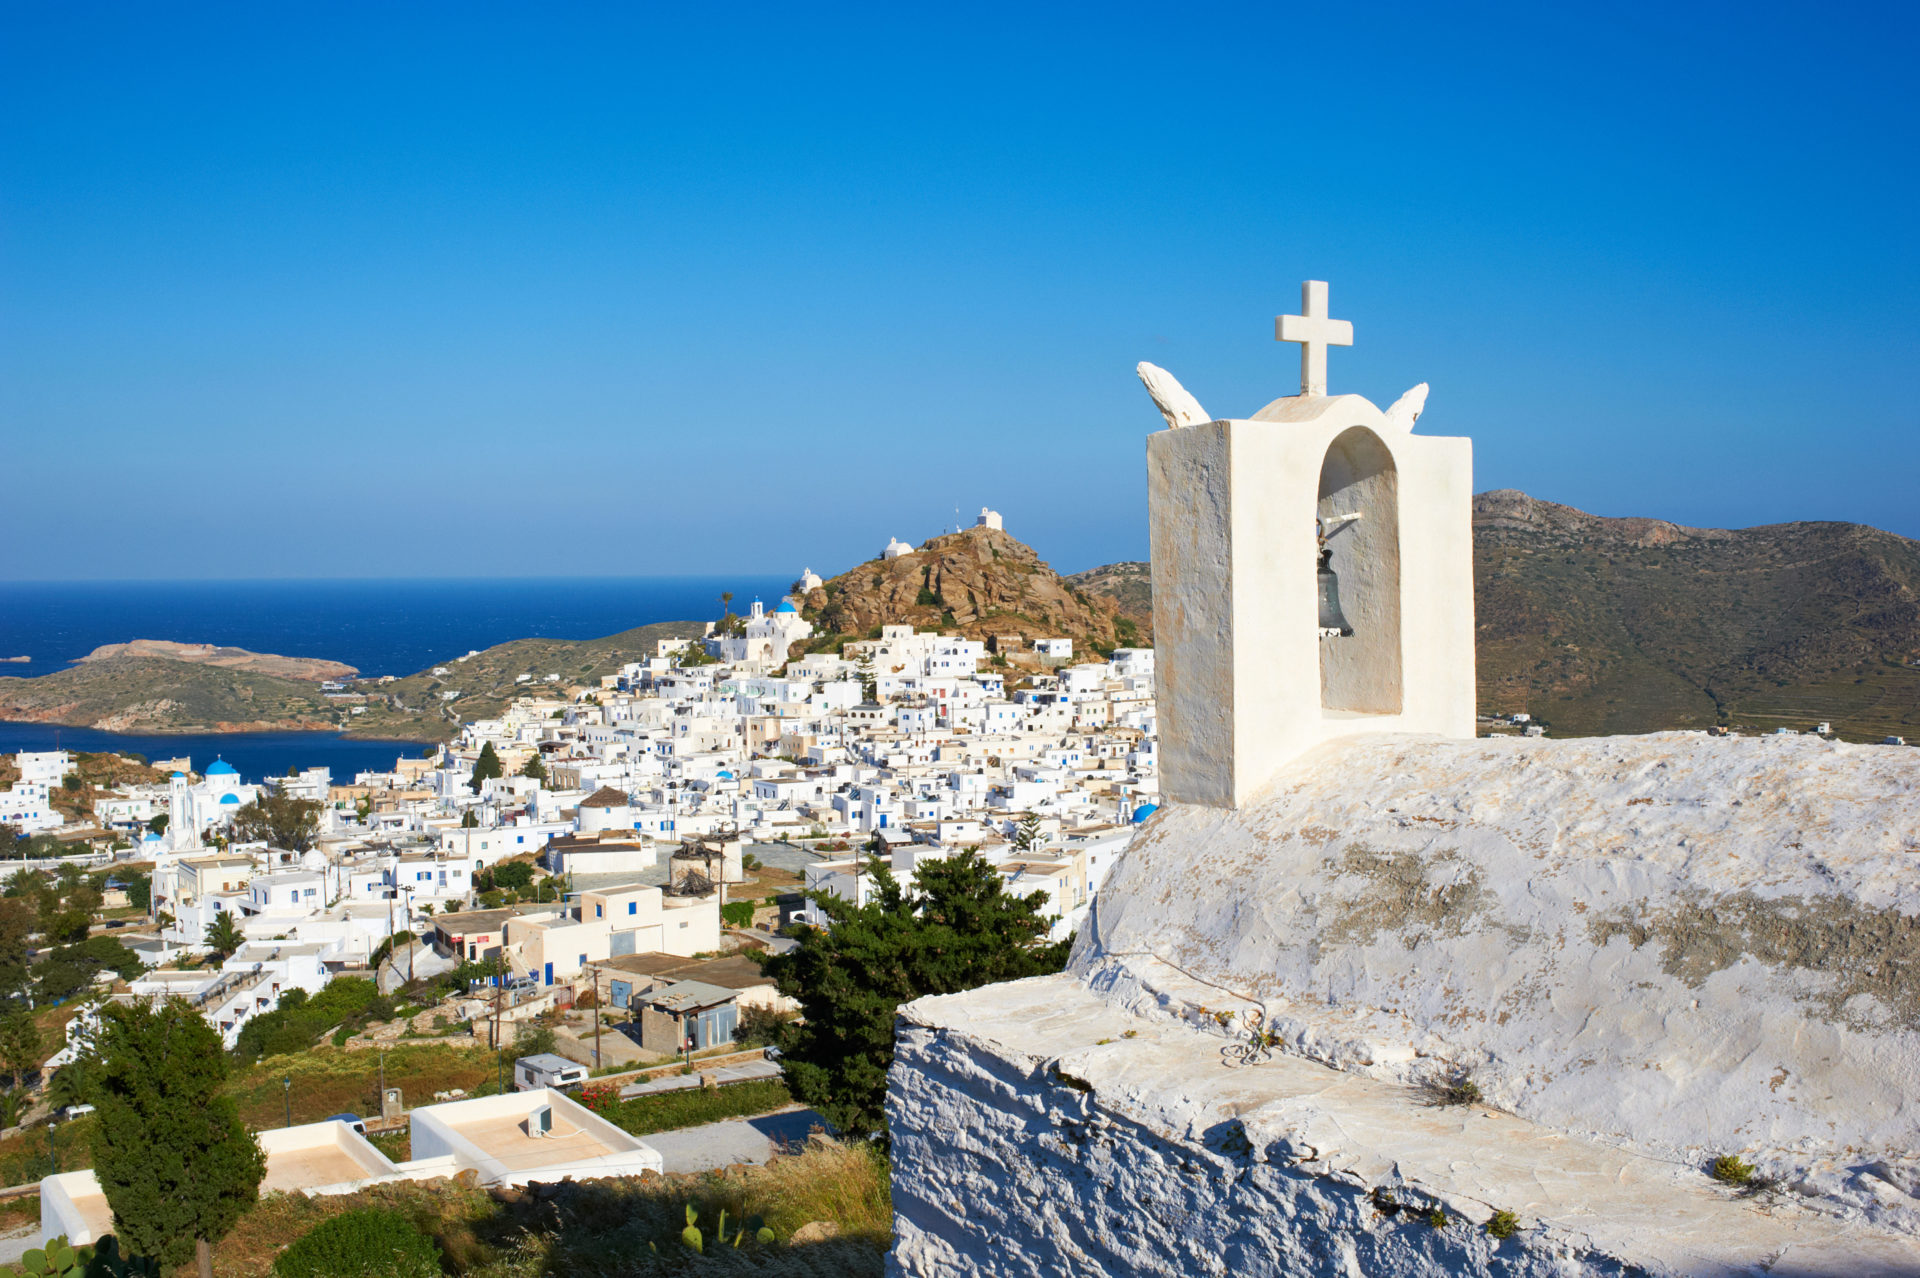 Greece, Cyclades, Ios island, church near Chora